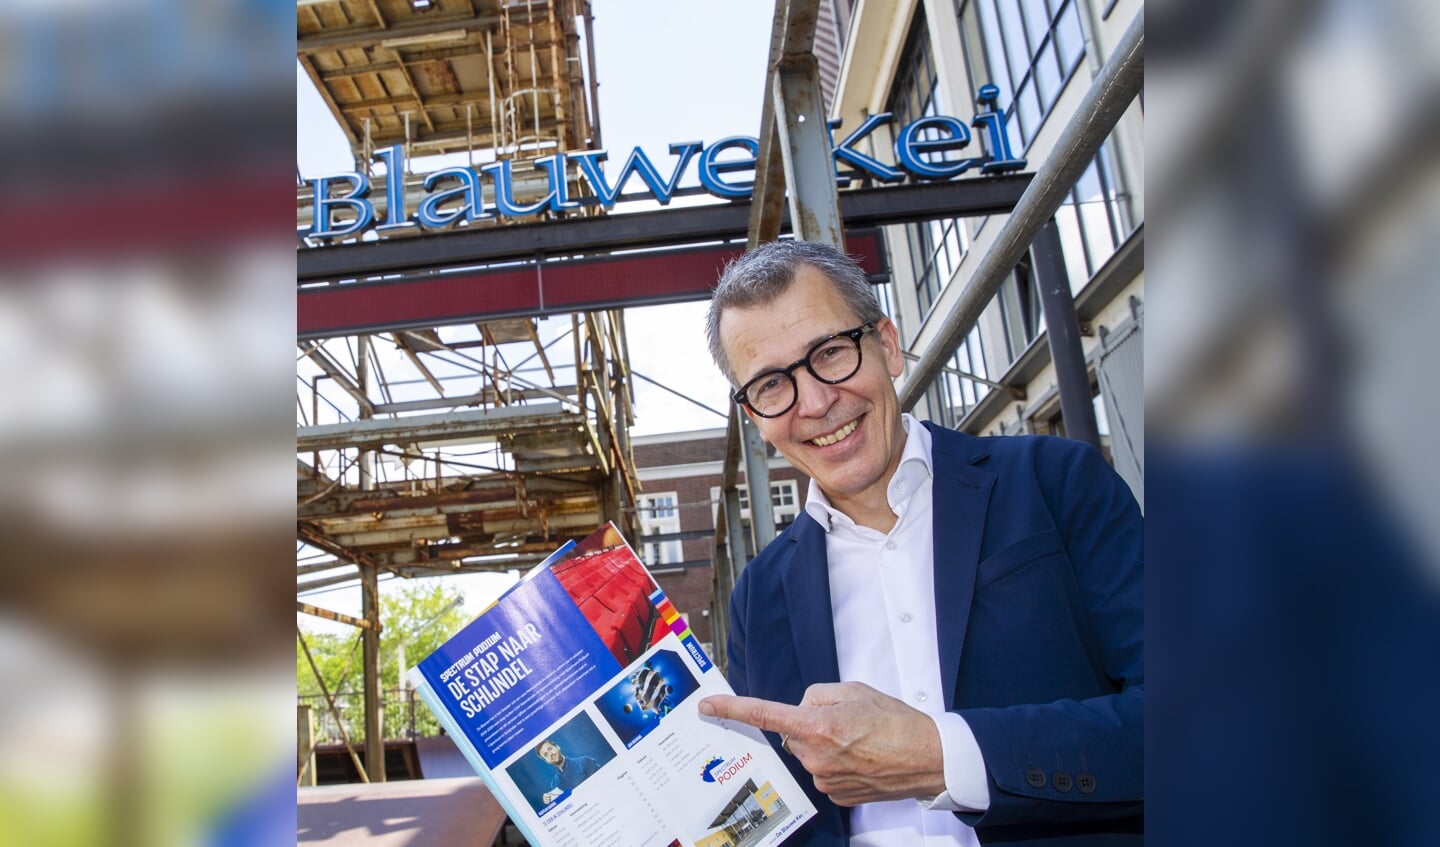 Harry Vermeulen is directeur van Theater de Blauwe Kei en directievoorzitter van Cultuurfabriek Noordkade in Veghel. 